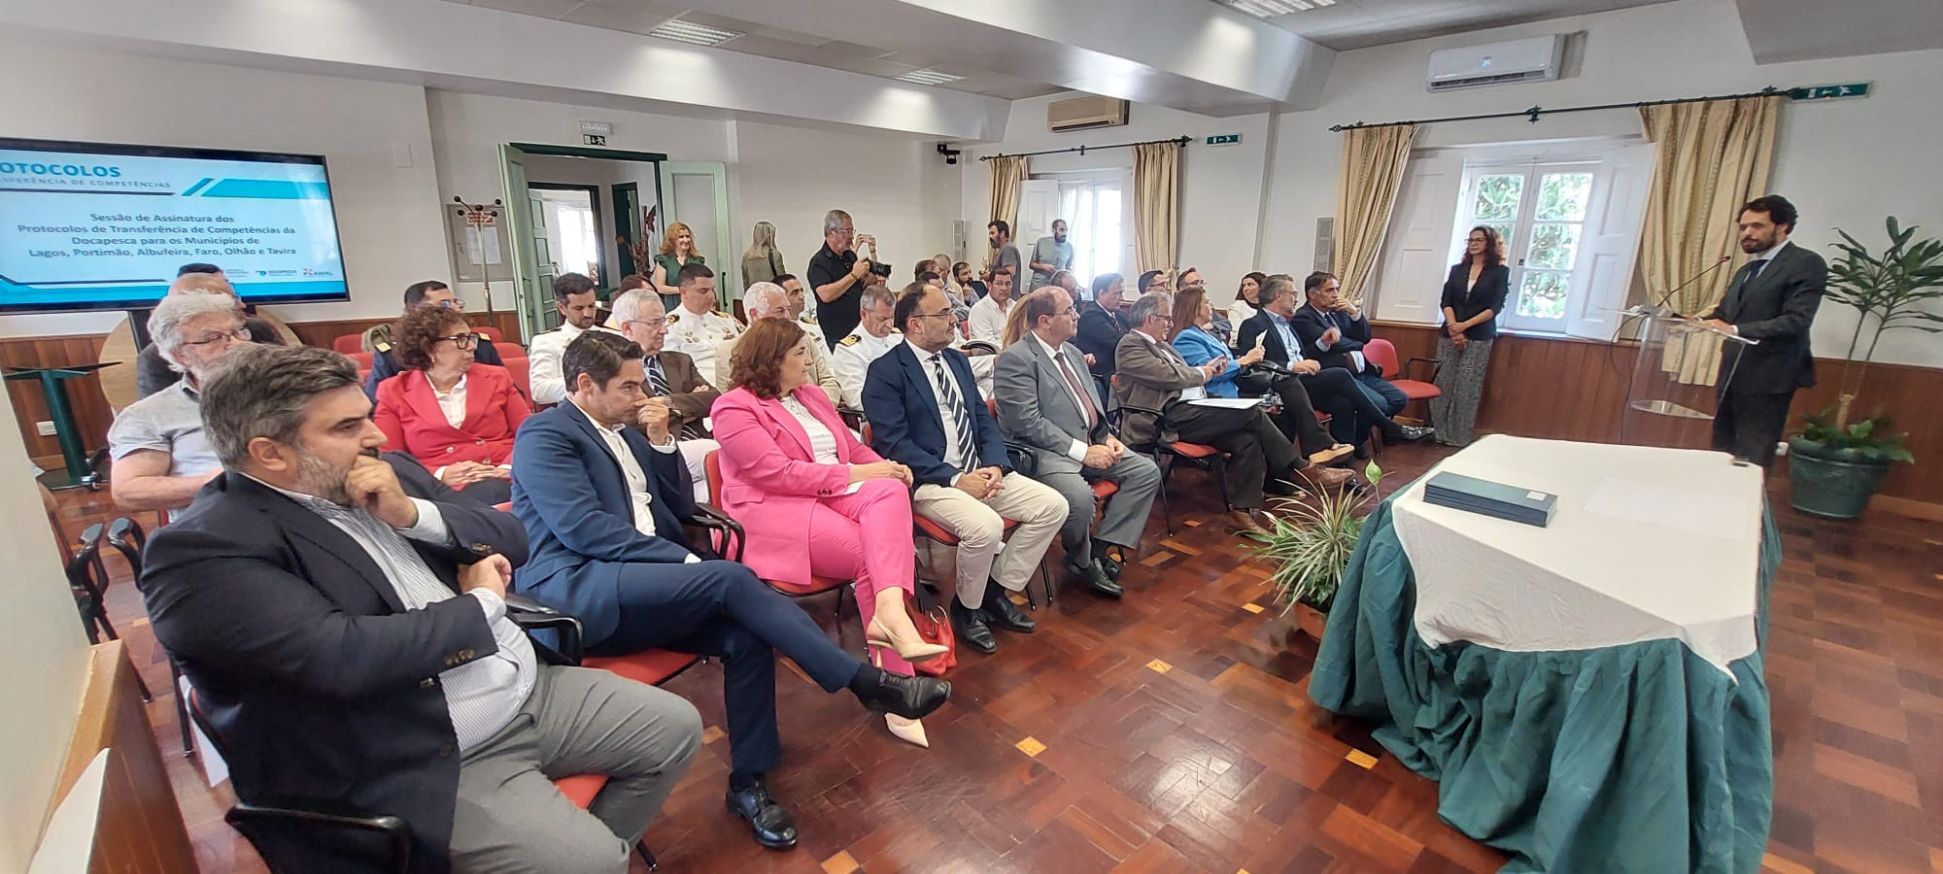 Docapesca transfere competências para seis municípios do Algarve